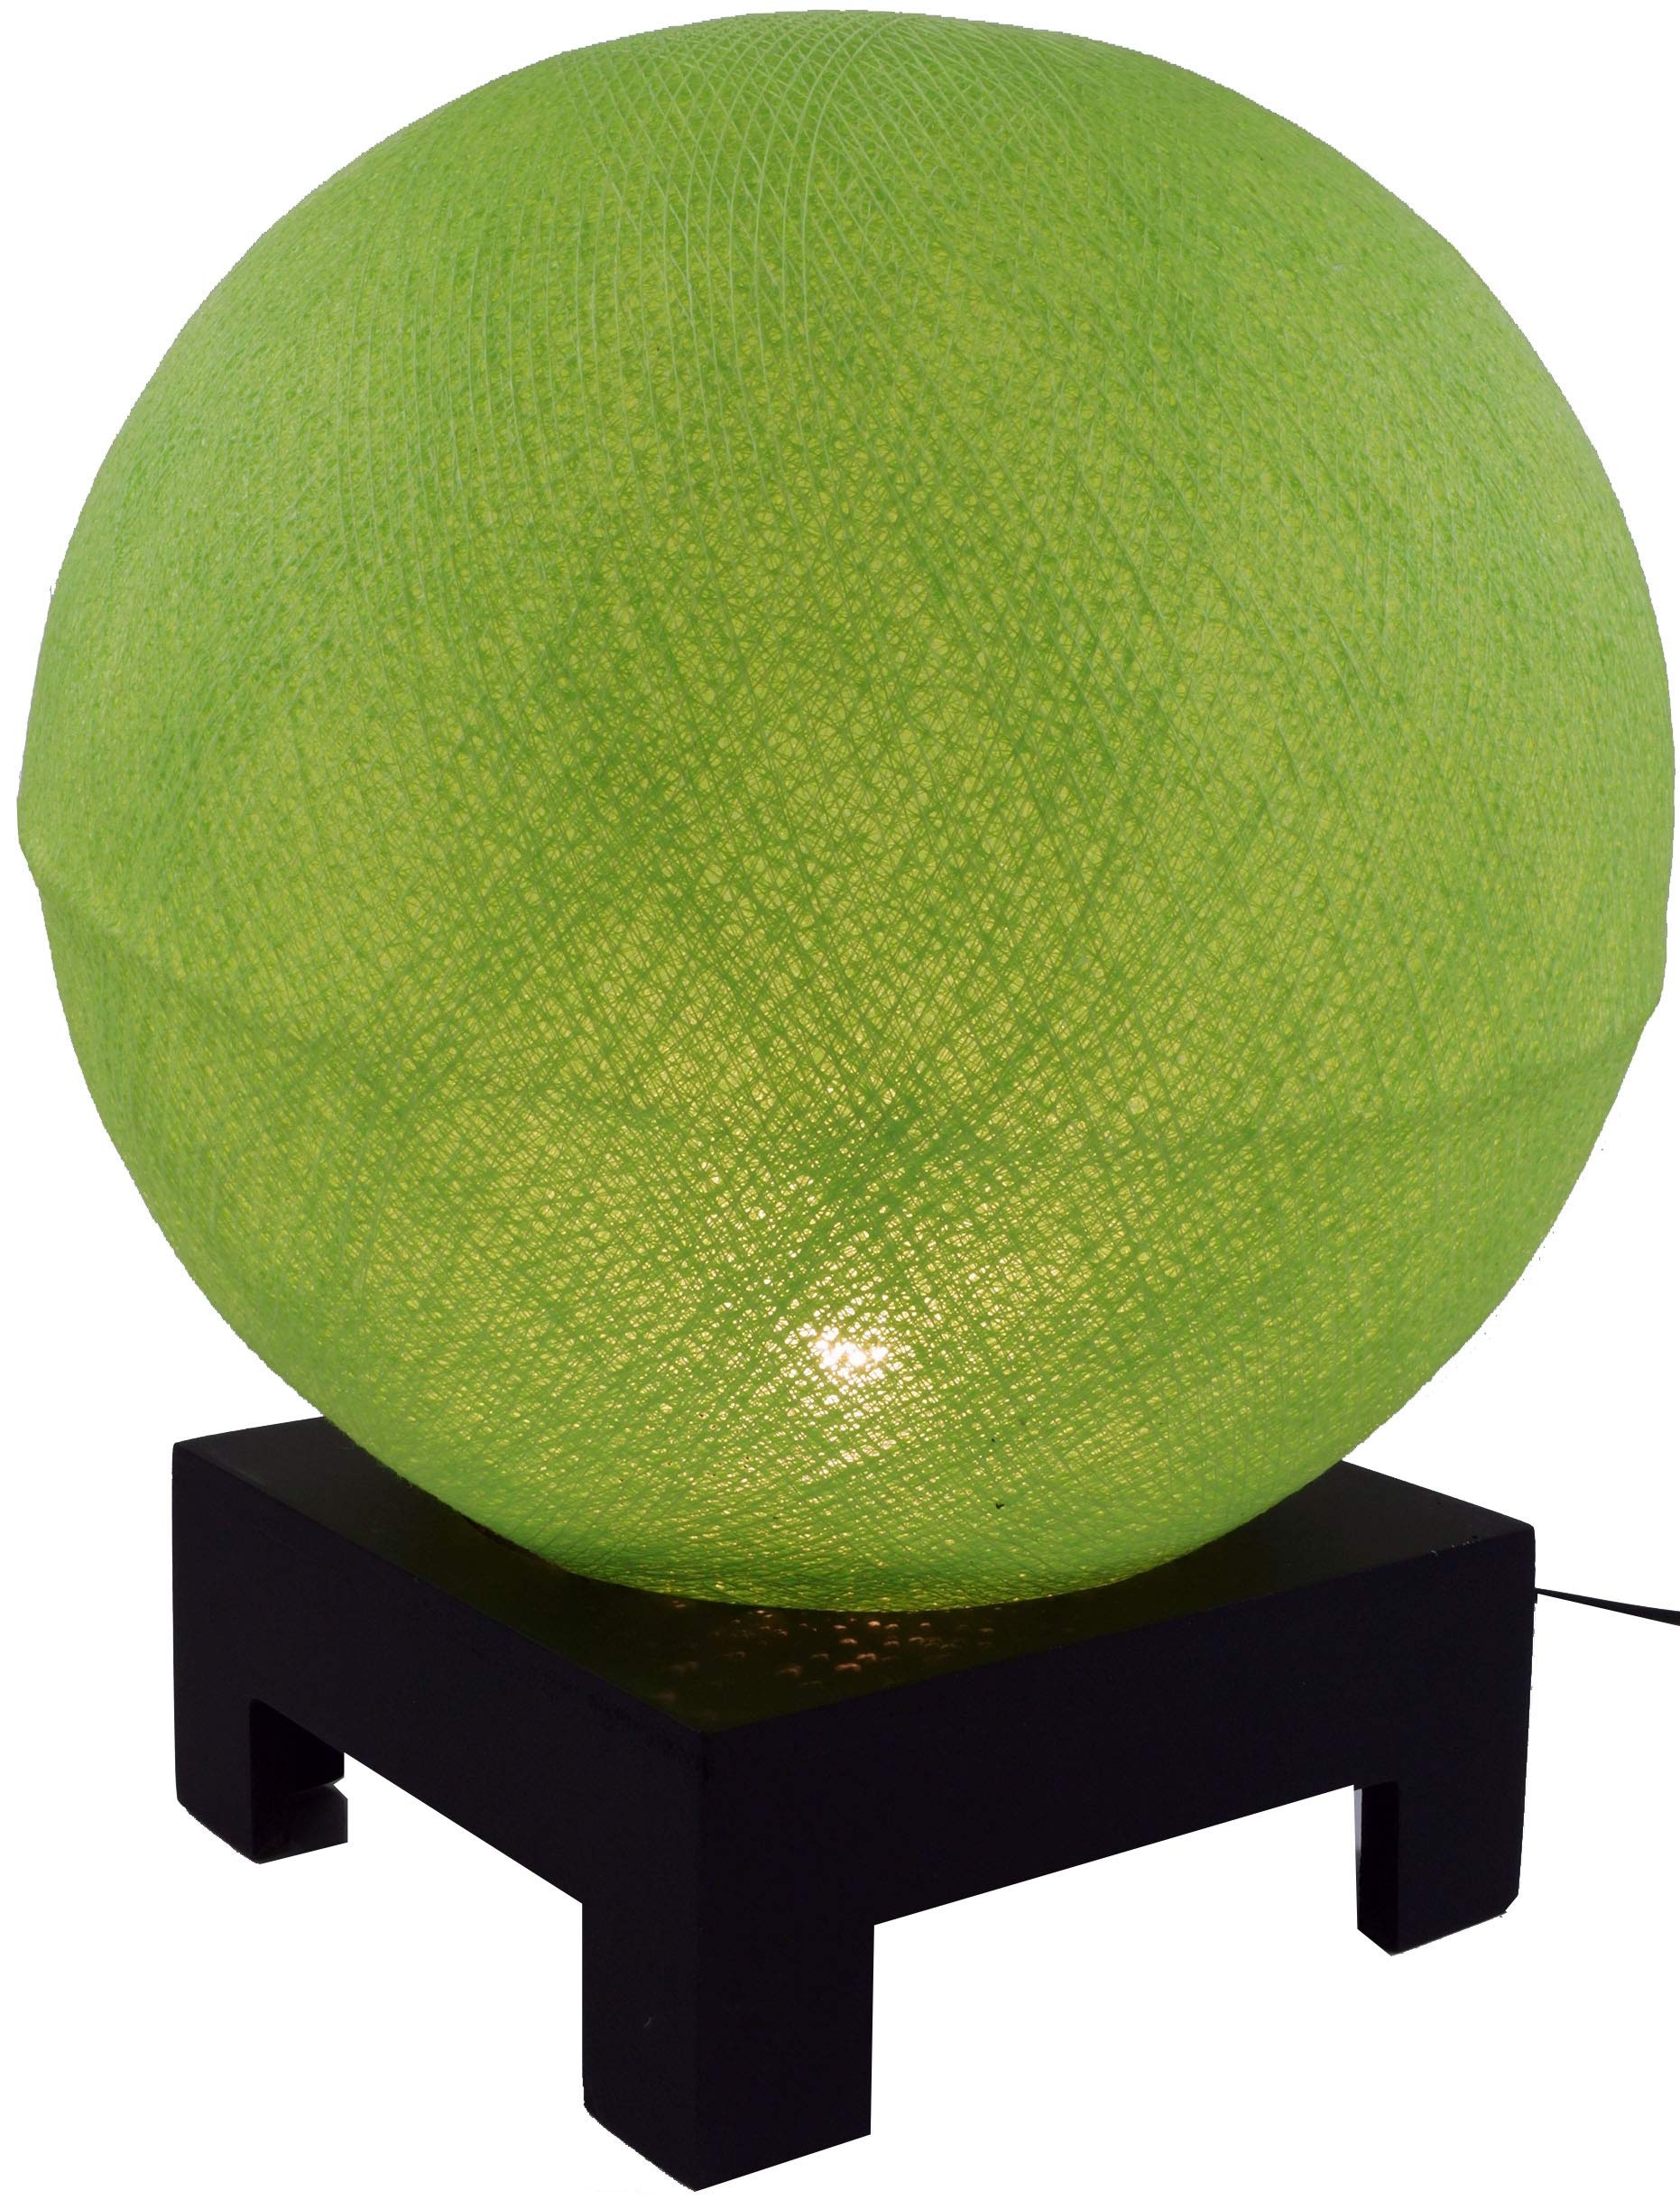 GURU SHOP Kugel Tischleuchte mit MDF Ständer aus Baumwollfäden - Hellgrün, 40x30x30 cm, Bunte, Exotische Tischlampen